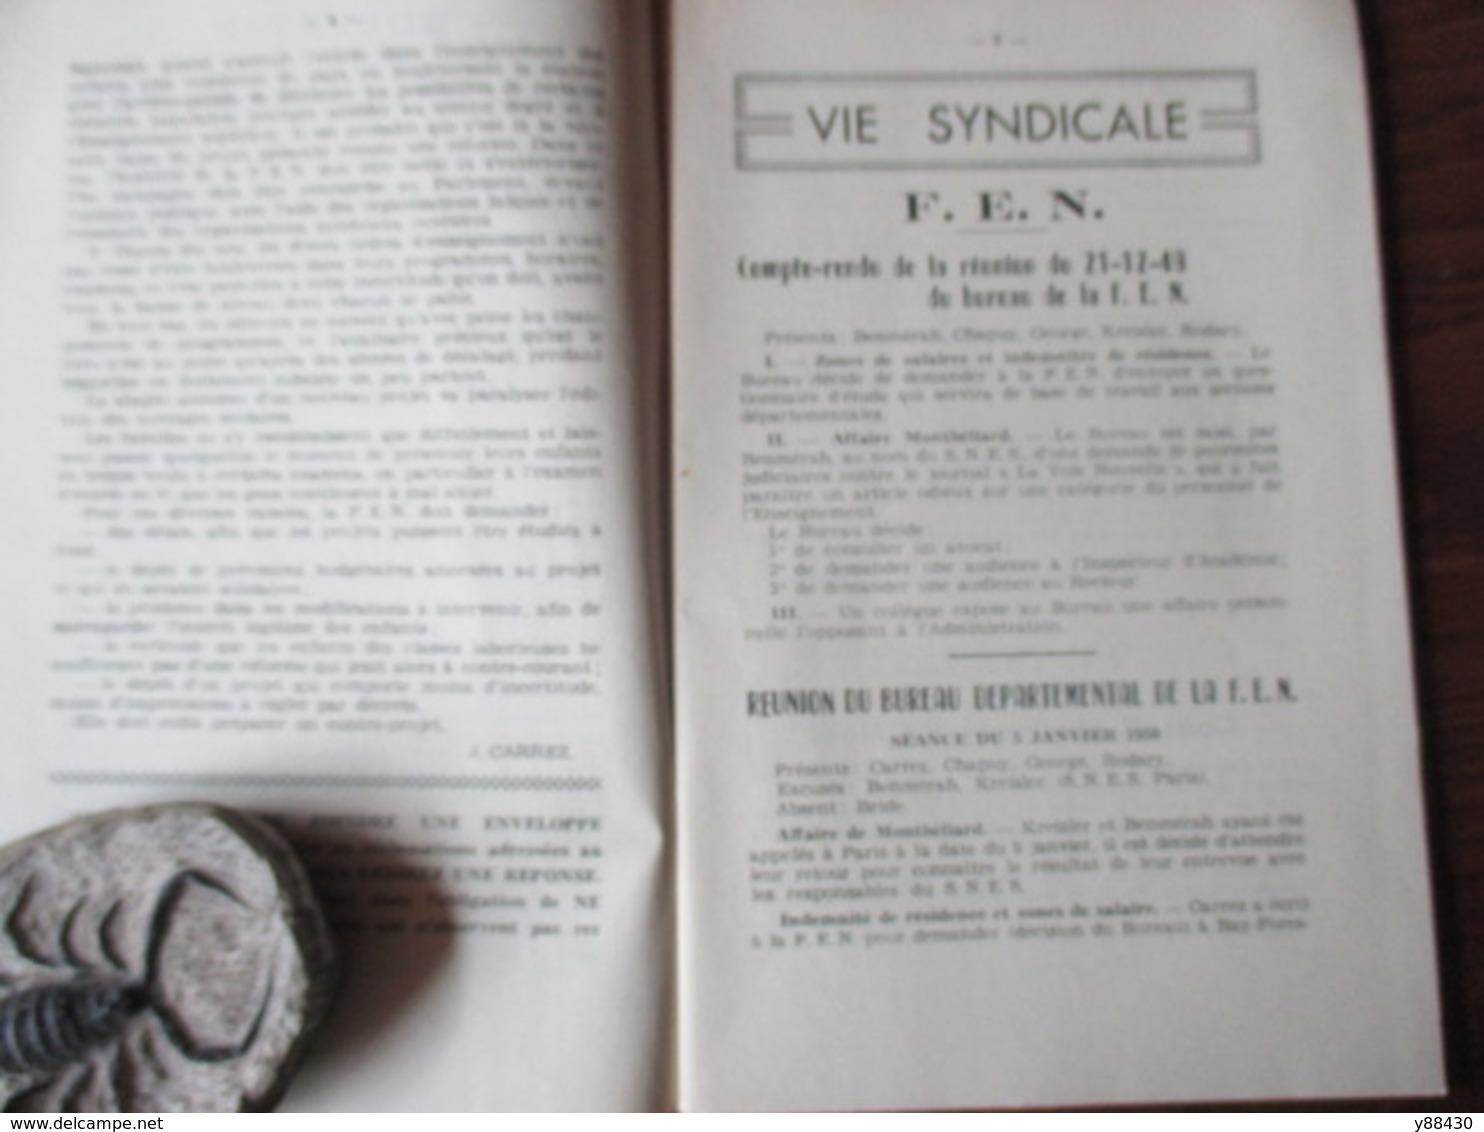 BULLETIN De La Fédération De L'Education Nationale Du DOUBS à BESANCON - Année 1950 . N°3 - 84 Pages -24 Scan - Fichas Didácticas